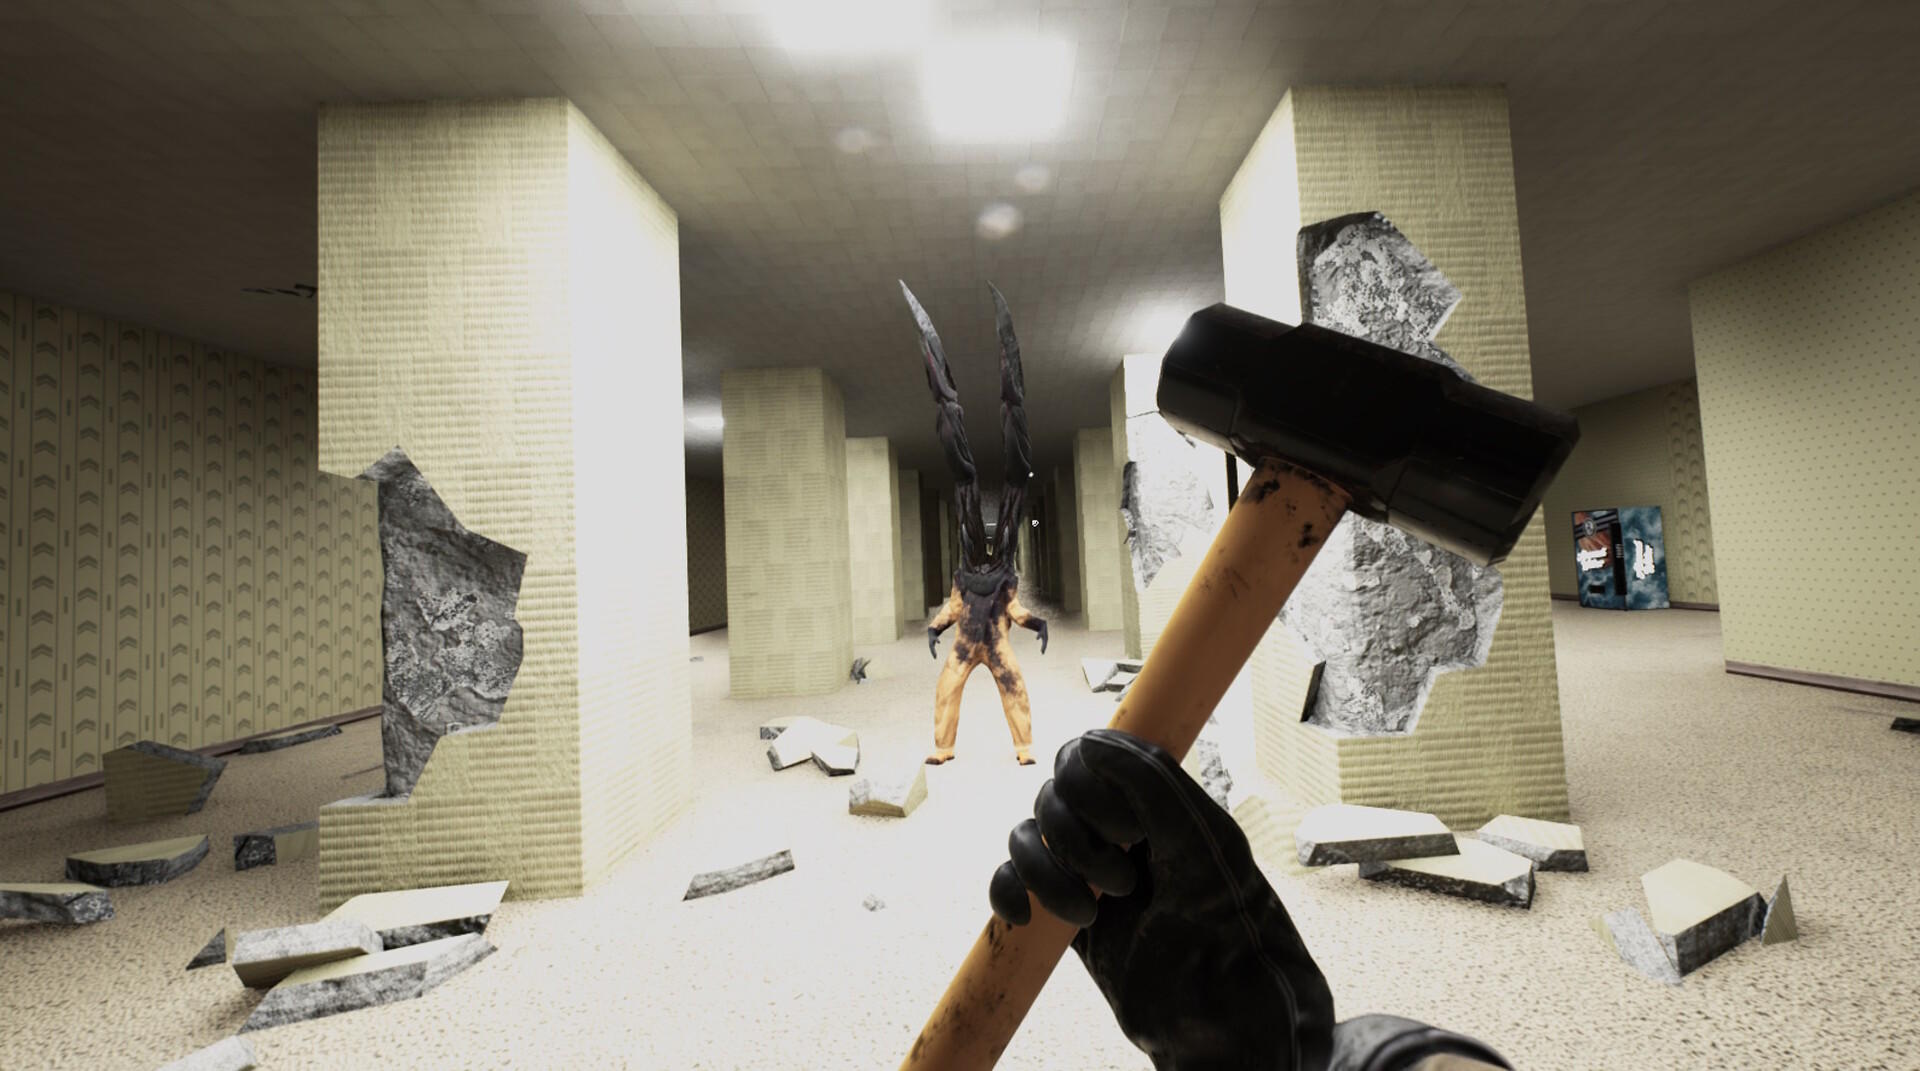 Backrooms Break screenshot game